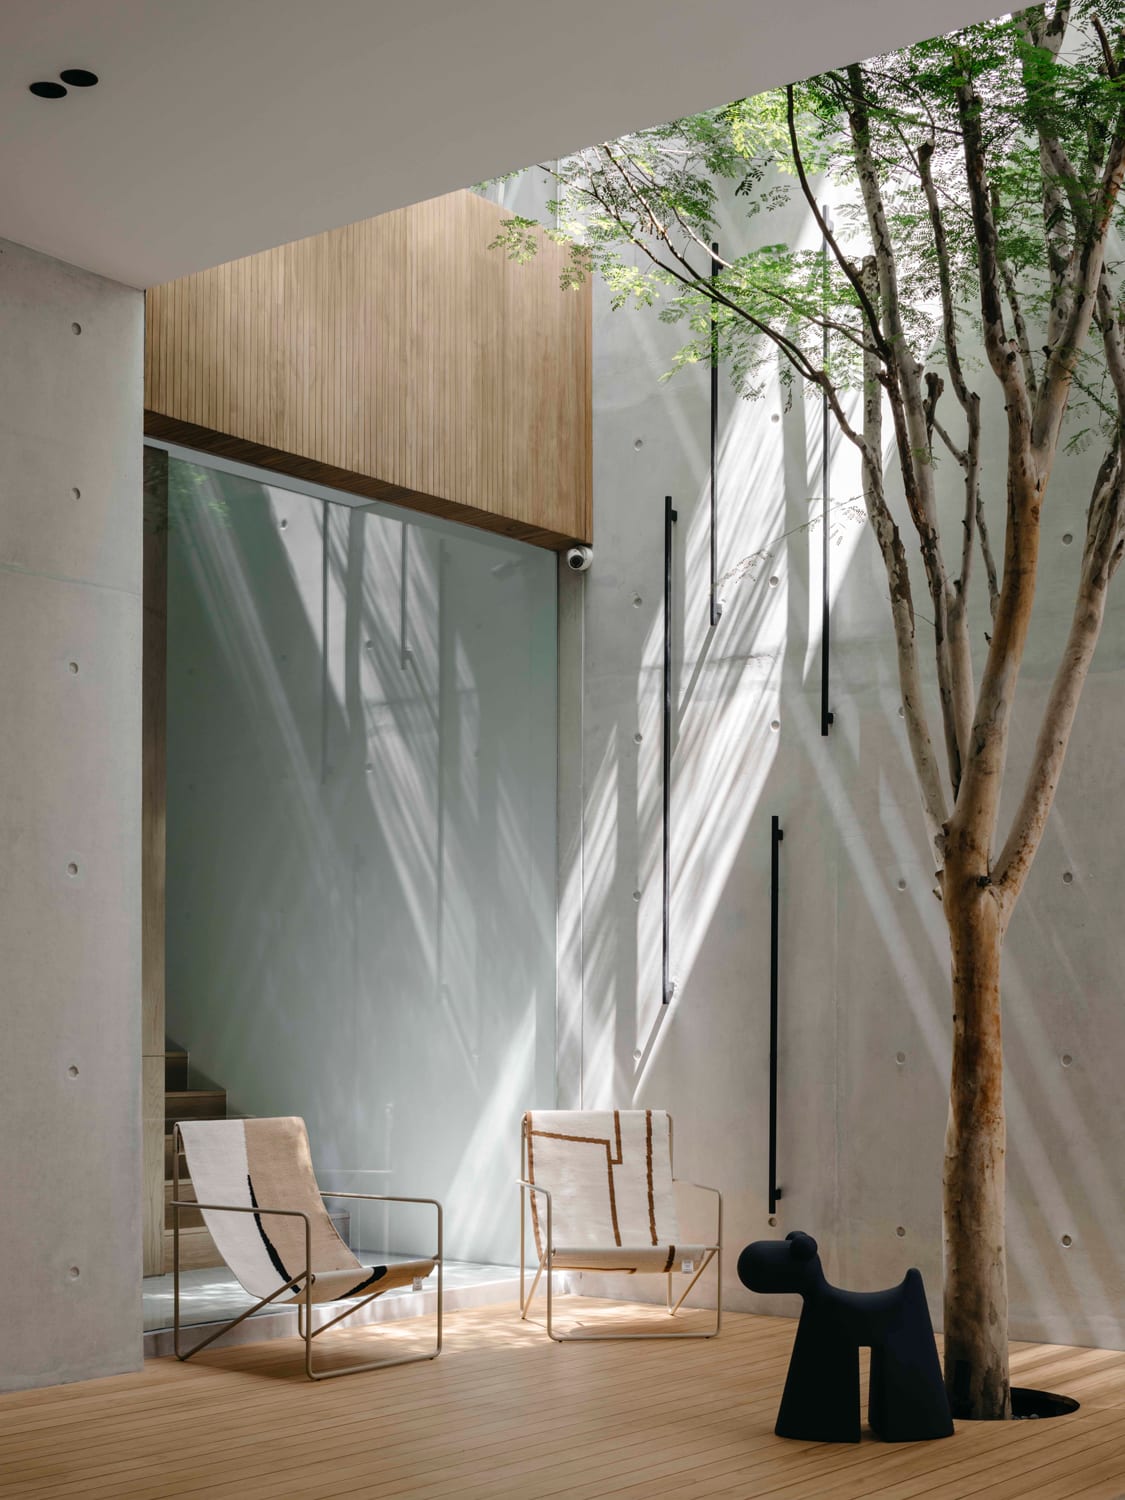 Modern Interior Design for Luxury Homes - BRANA Designs